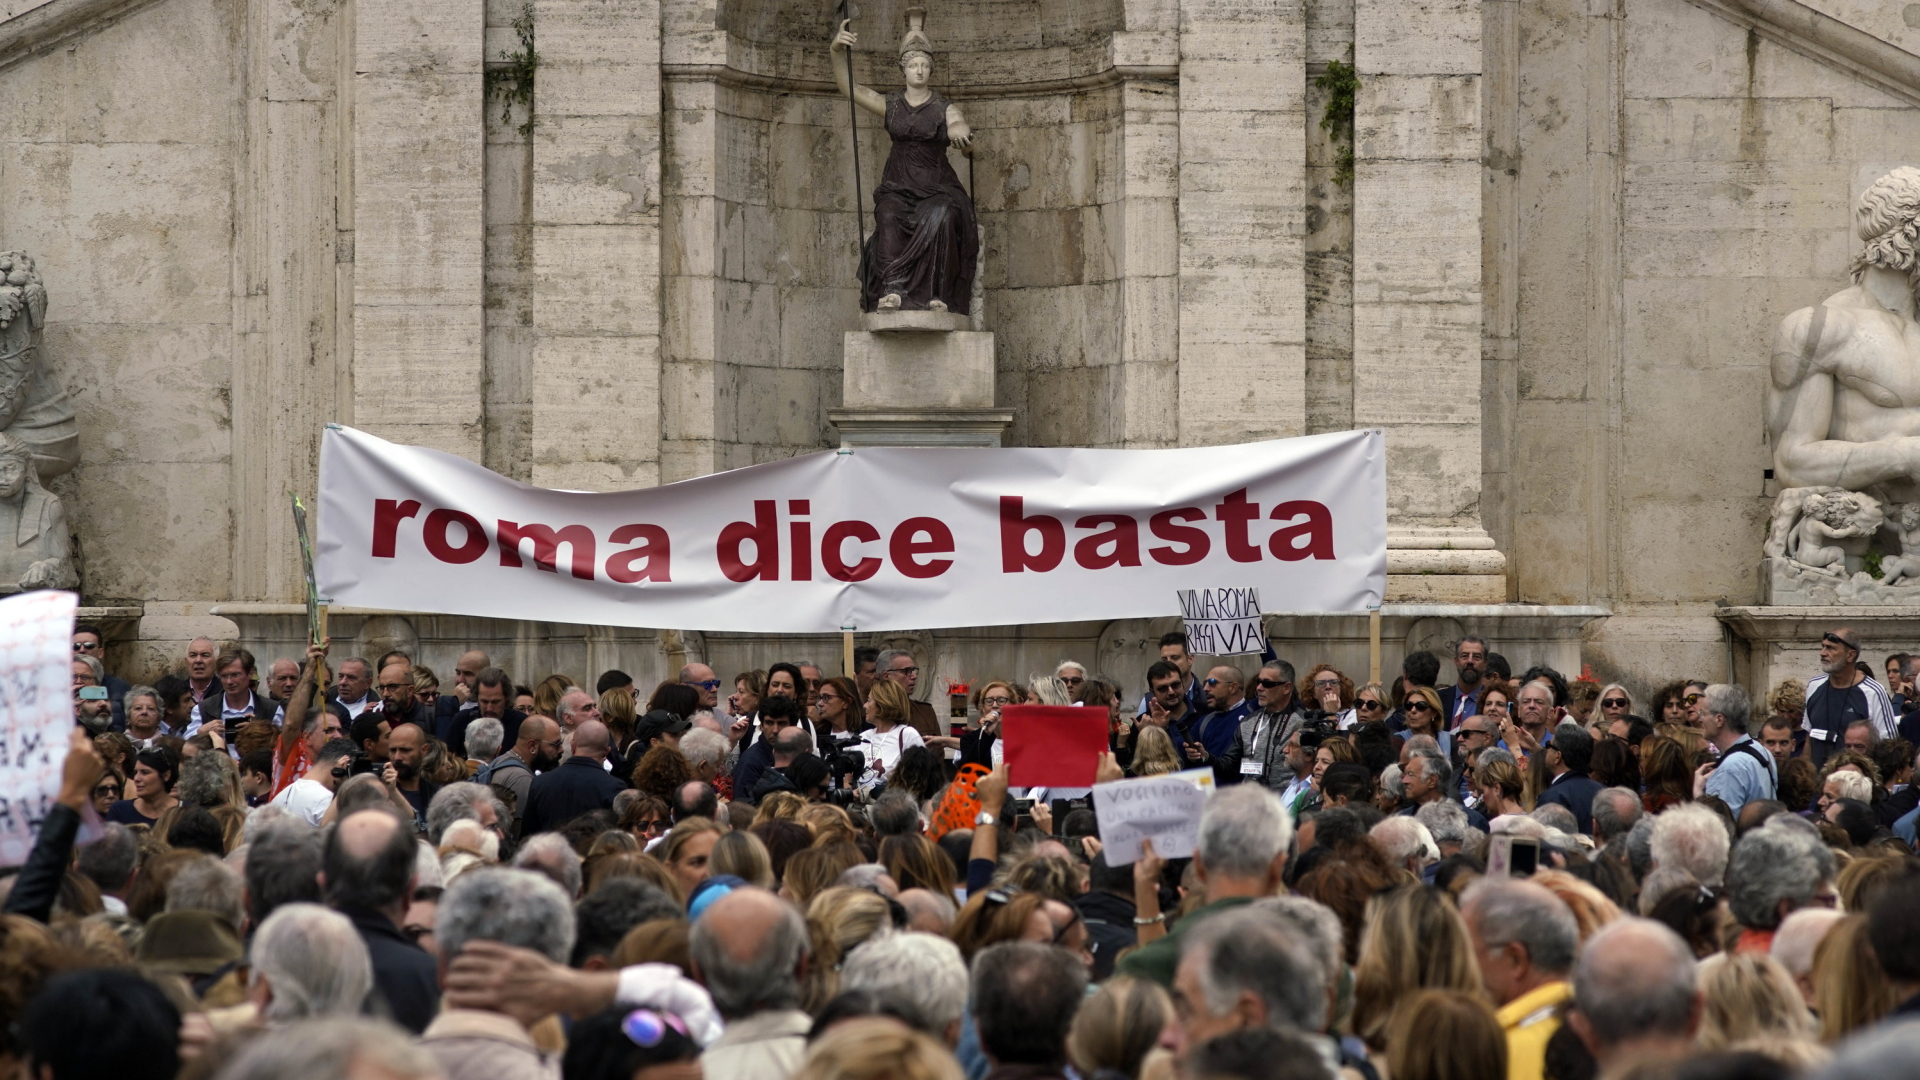 Demoteilnehmer in Rom haben ein Transparent mit der Aufschrift "Rom sagt basta!" aufgehängt. | Bildquelle: dpa